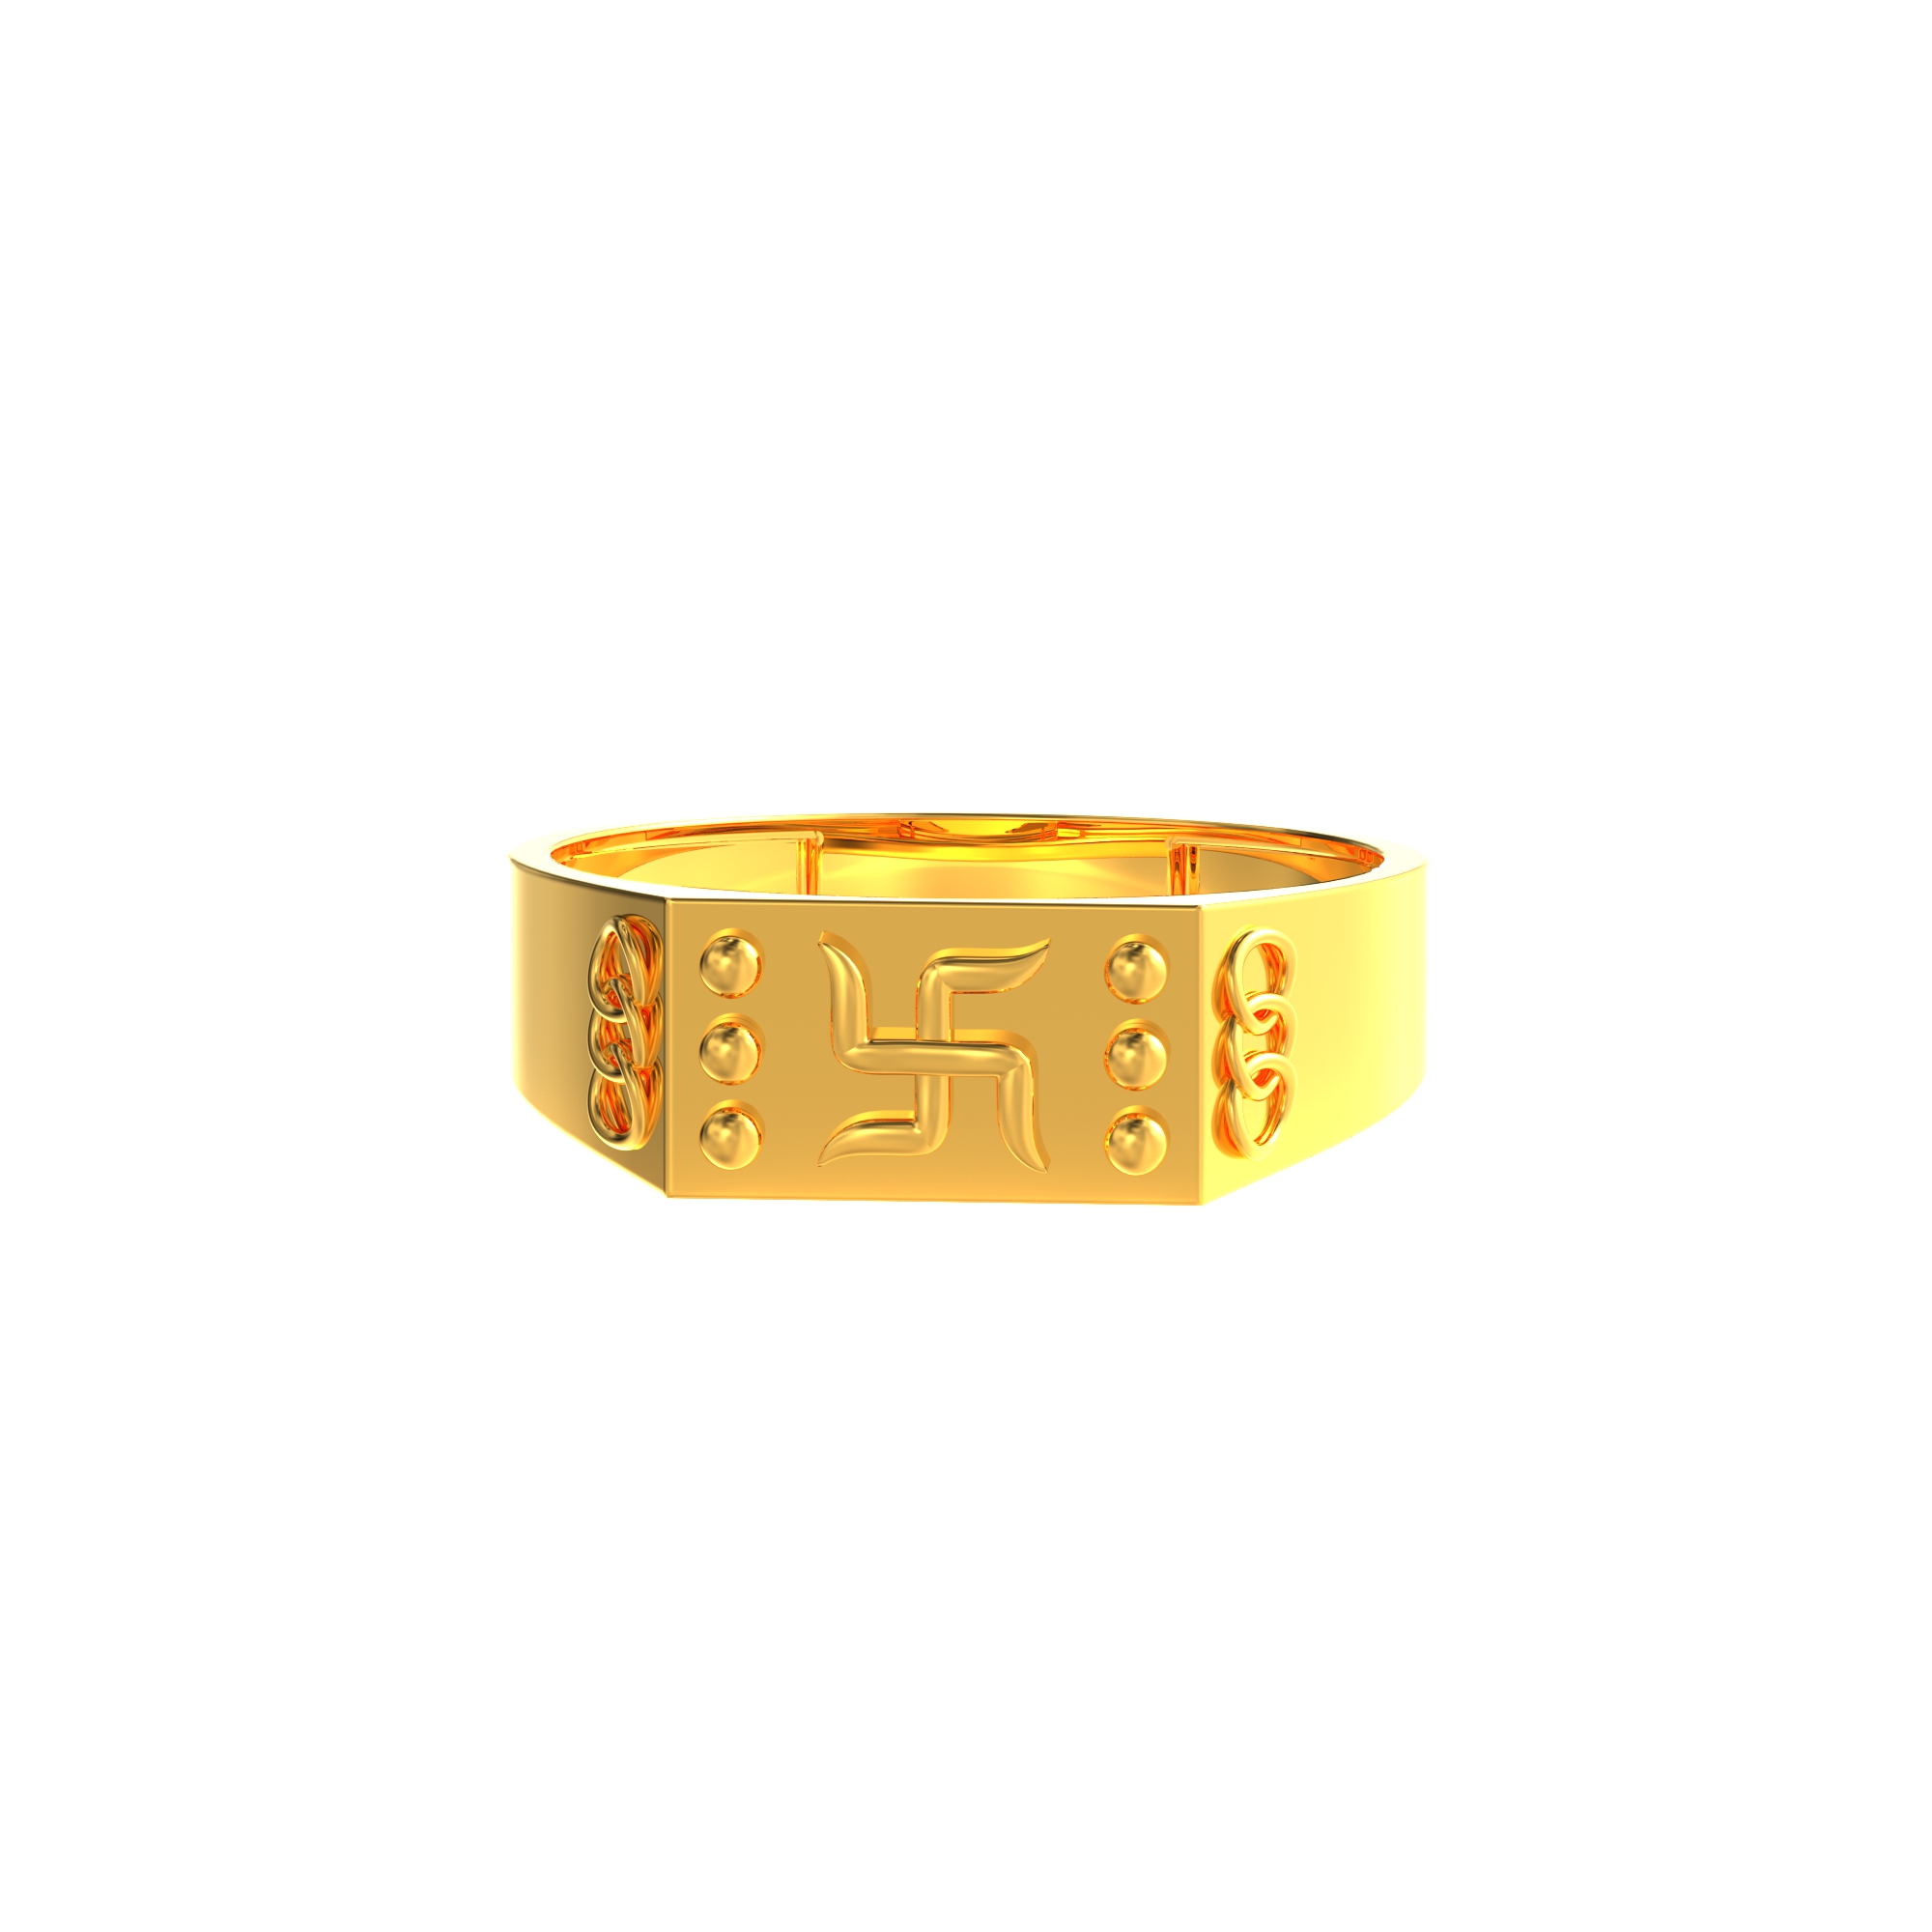 Swathik Gold ring